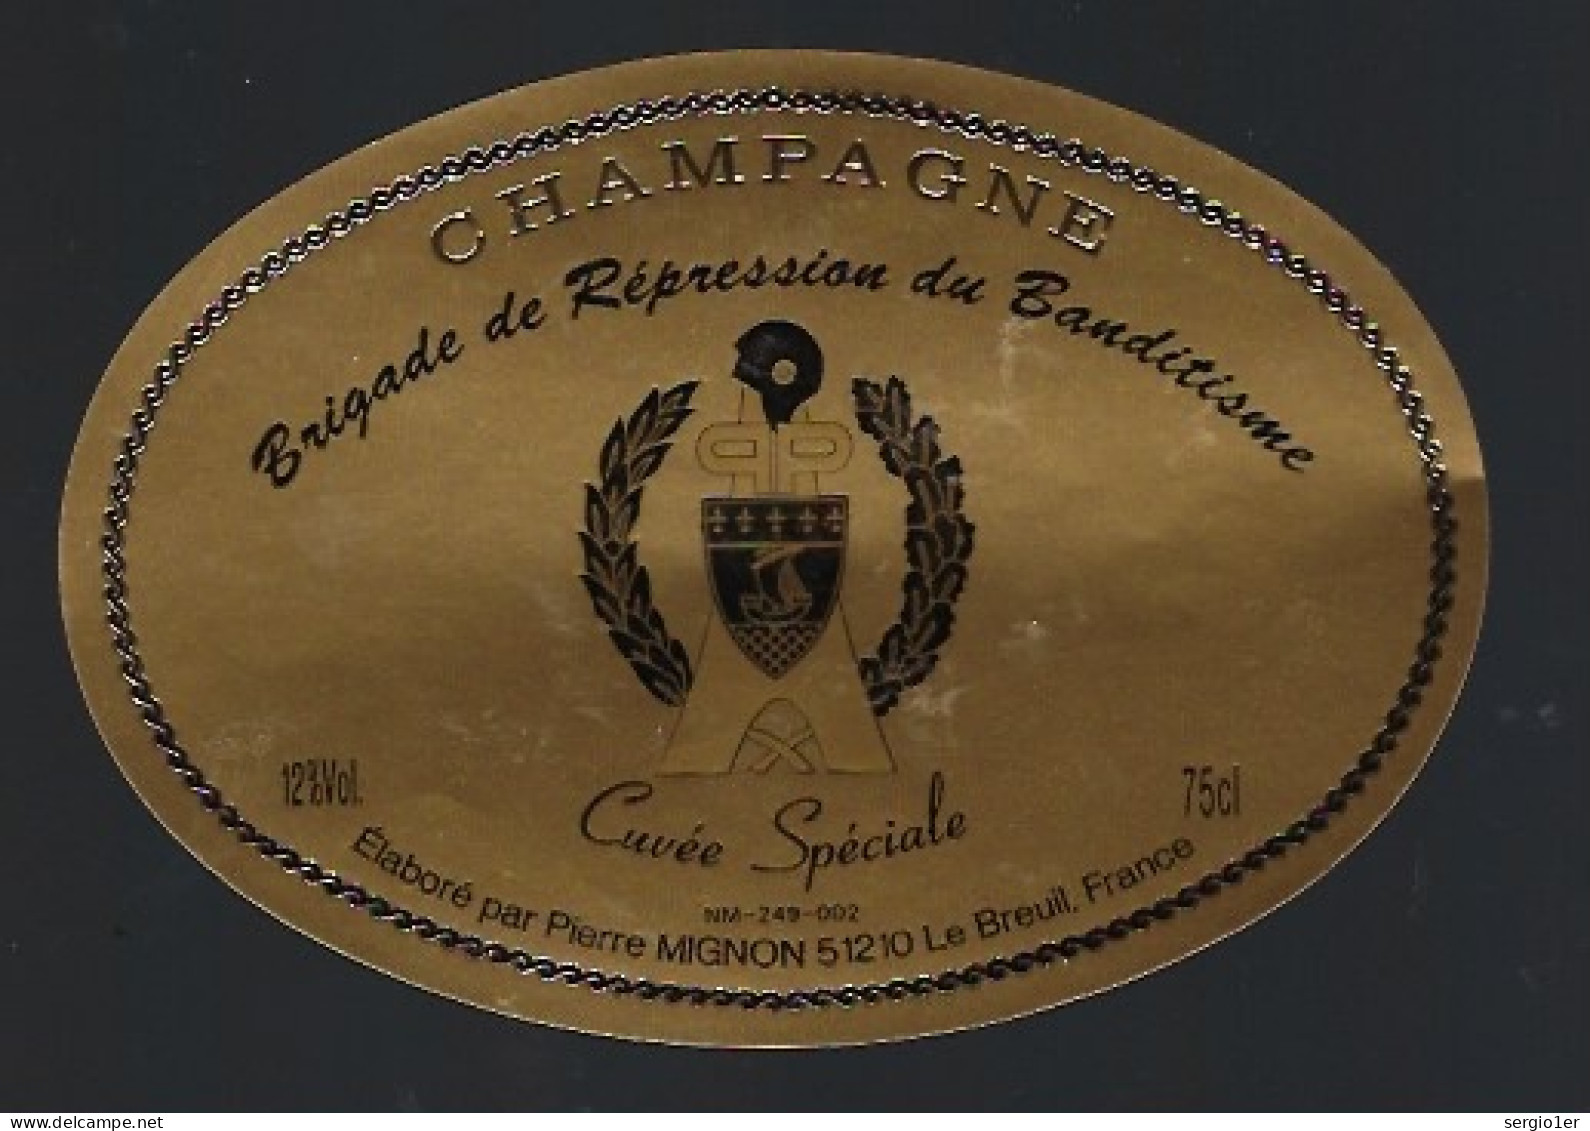 Etiquette Champagne Cuvée Spéciale Brigade De Répréssion Du Banditisme Pierre Mignon Le Breuil Marne 51 - Champan